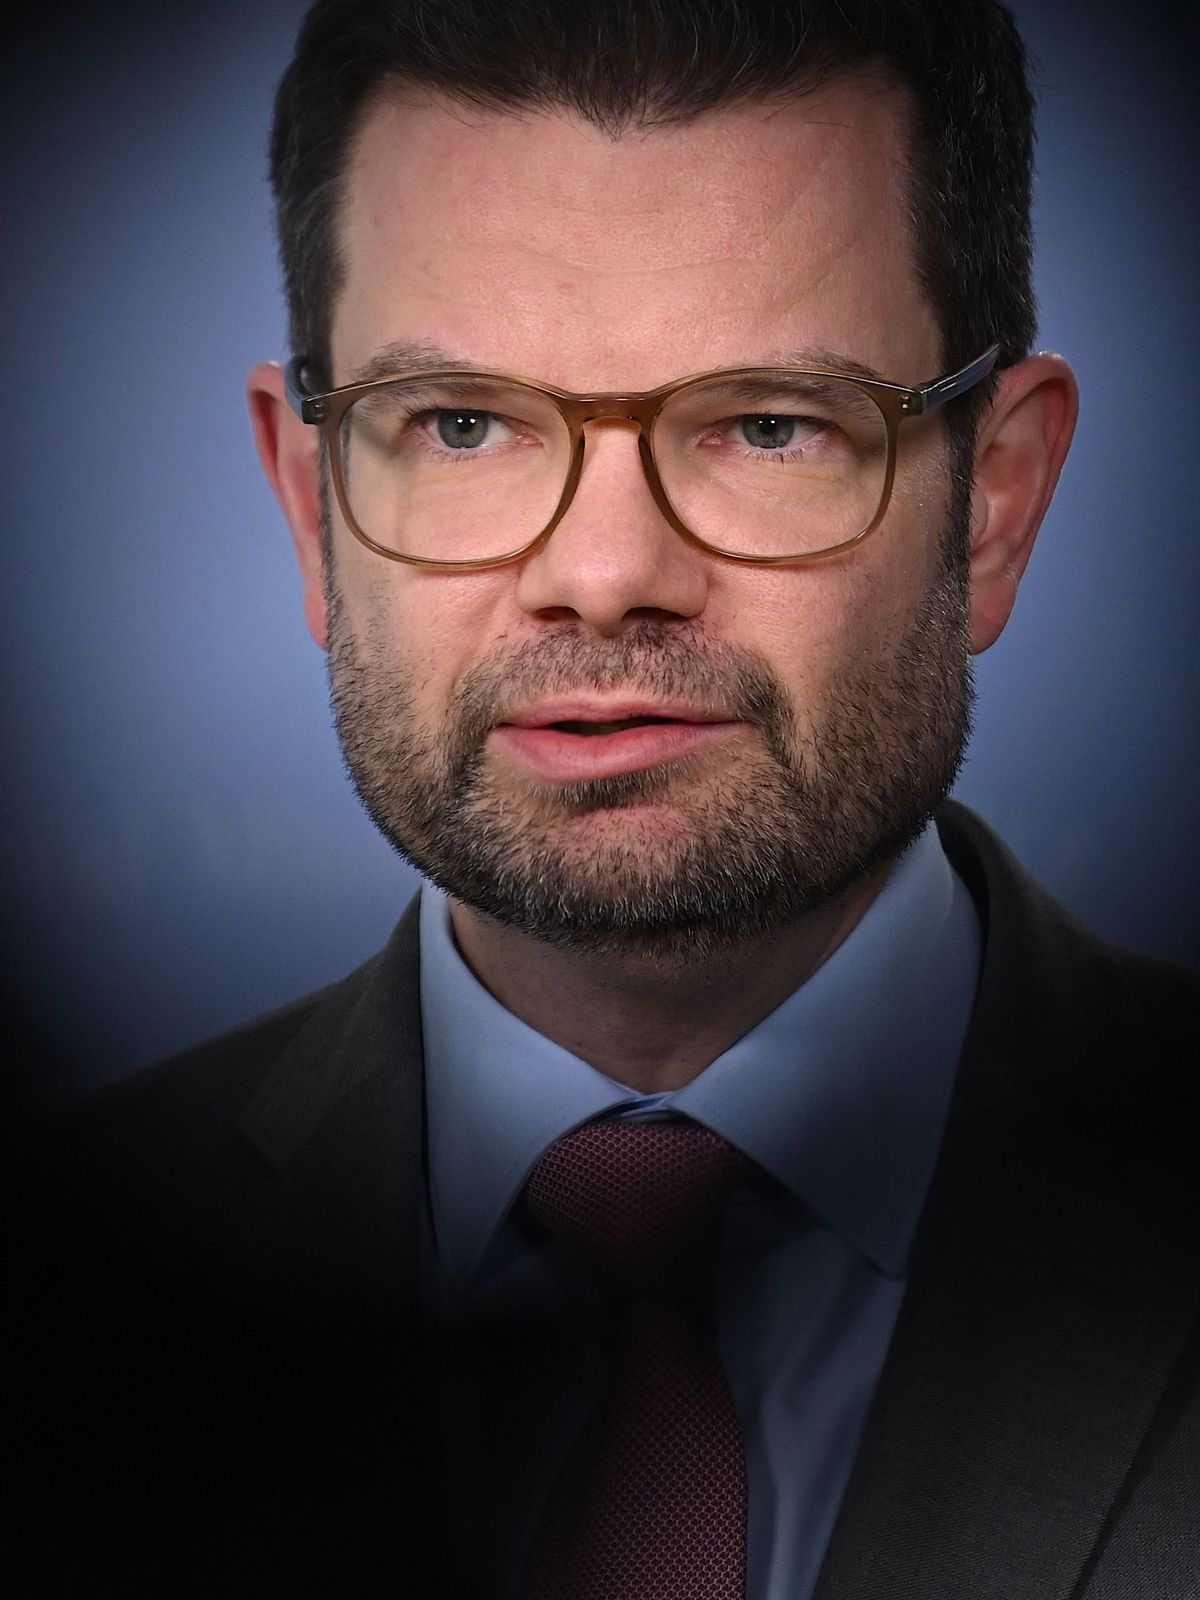 Marco Buschmann (FDP), Bundesminister der Justiz, spricht bei einem Statement über die mutmaßliche Agententätigkeit chinesischer Spione.